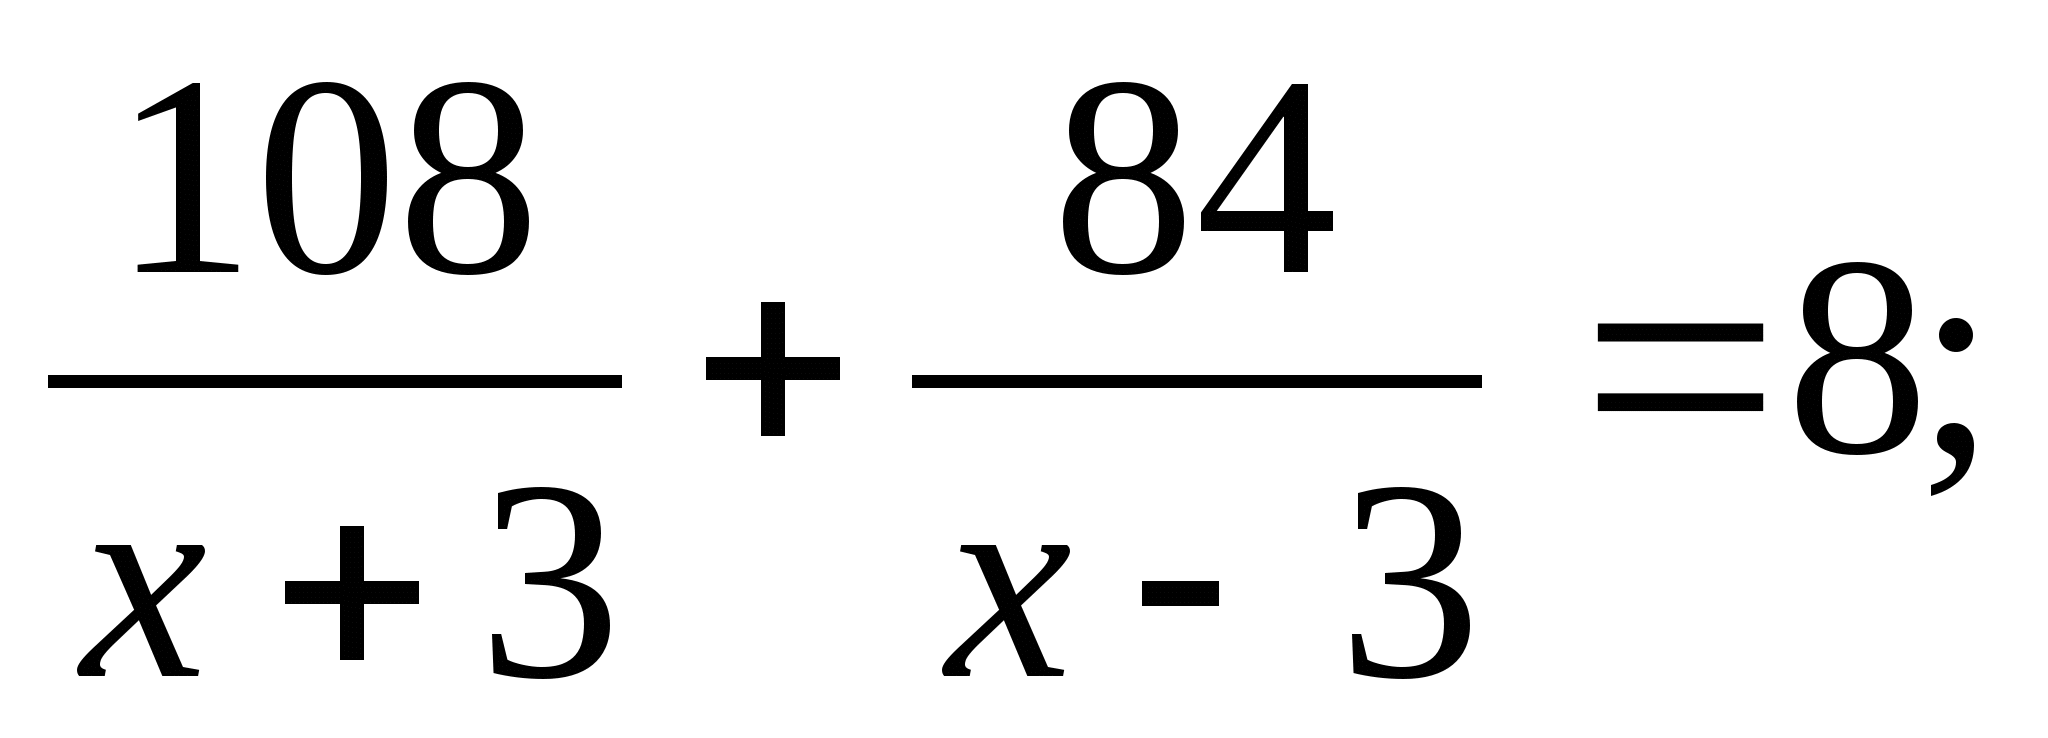 Урок алгебры в 8 классе Решение задач с помощью дробно-рациональных уравнений